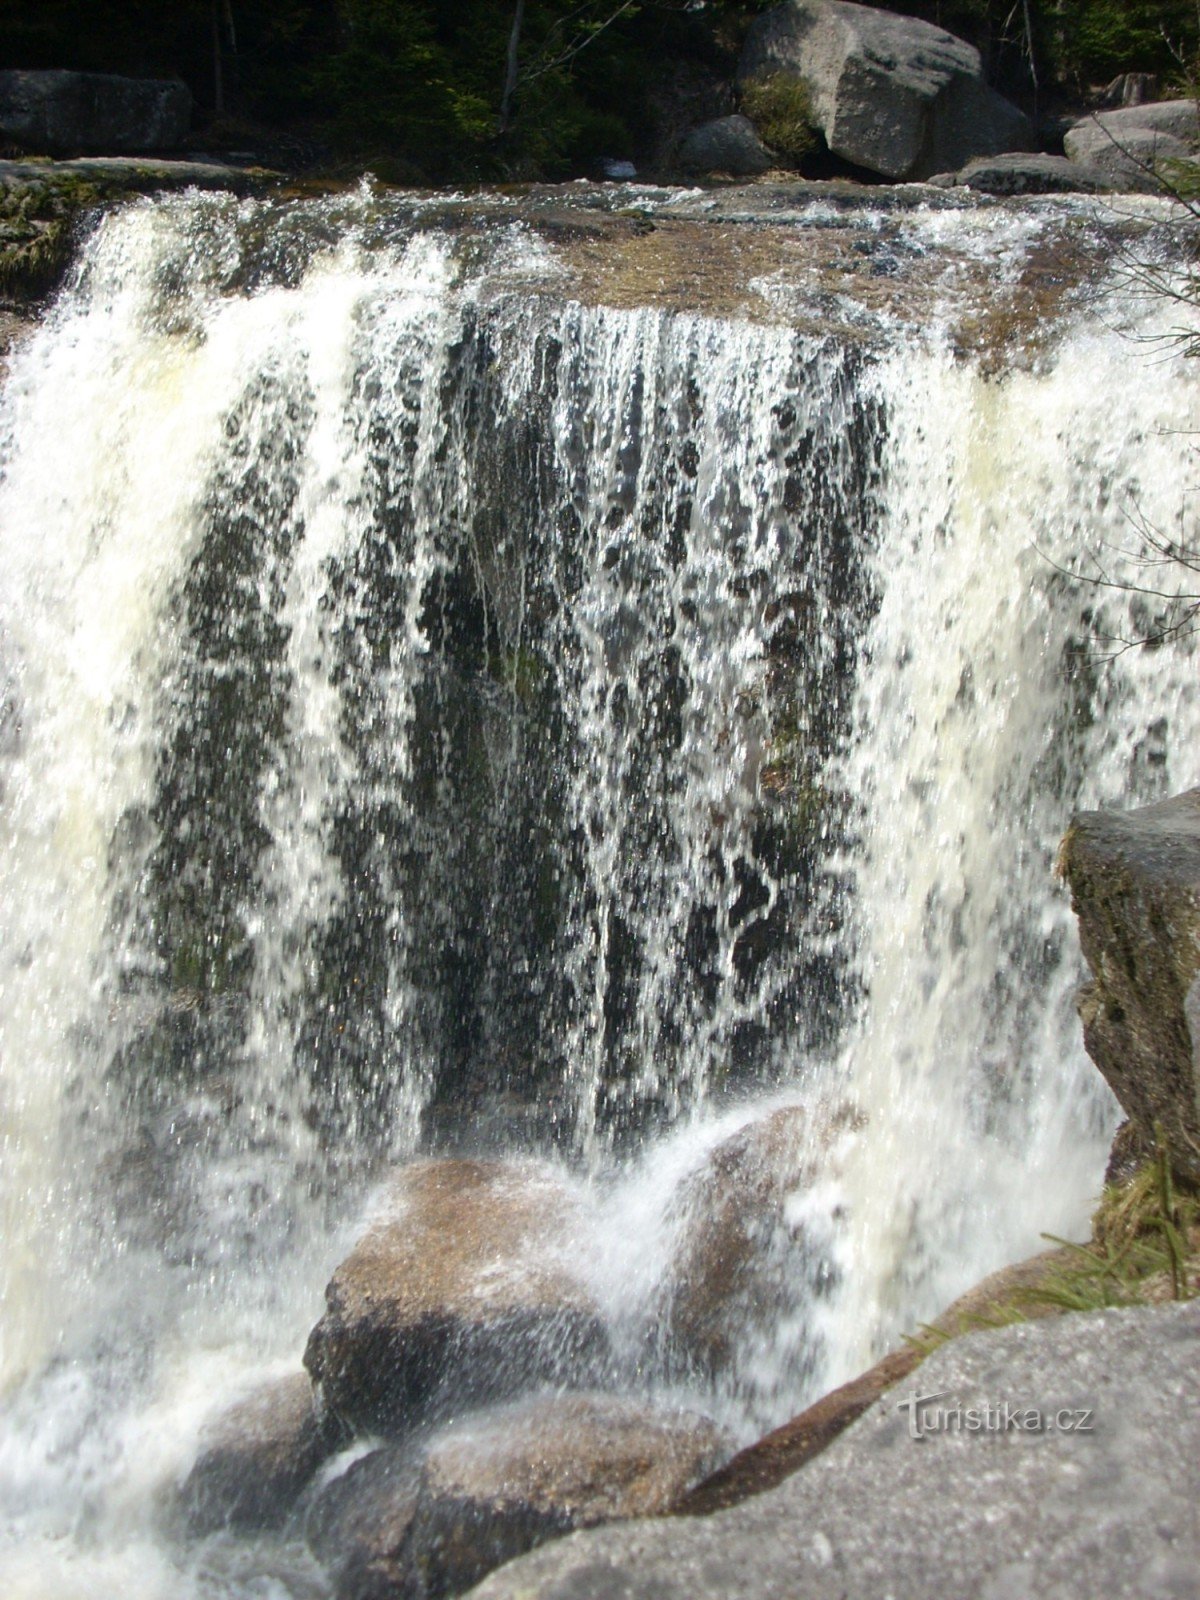 Największy i najpiękniejszy wodospad w Górach Izerskich - Wodospady Jedlové